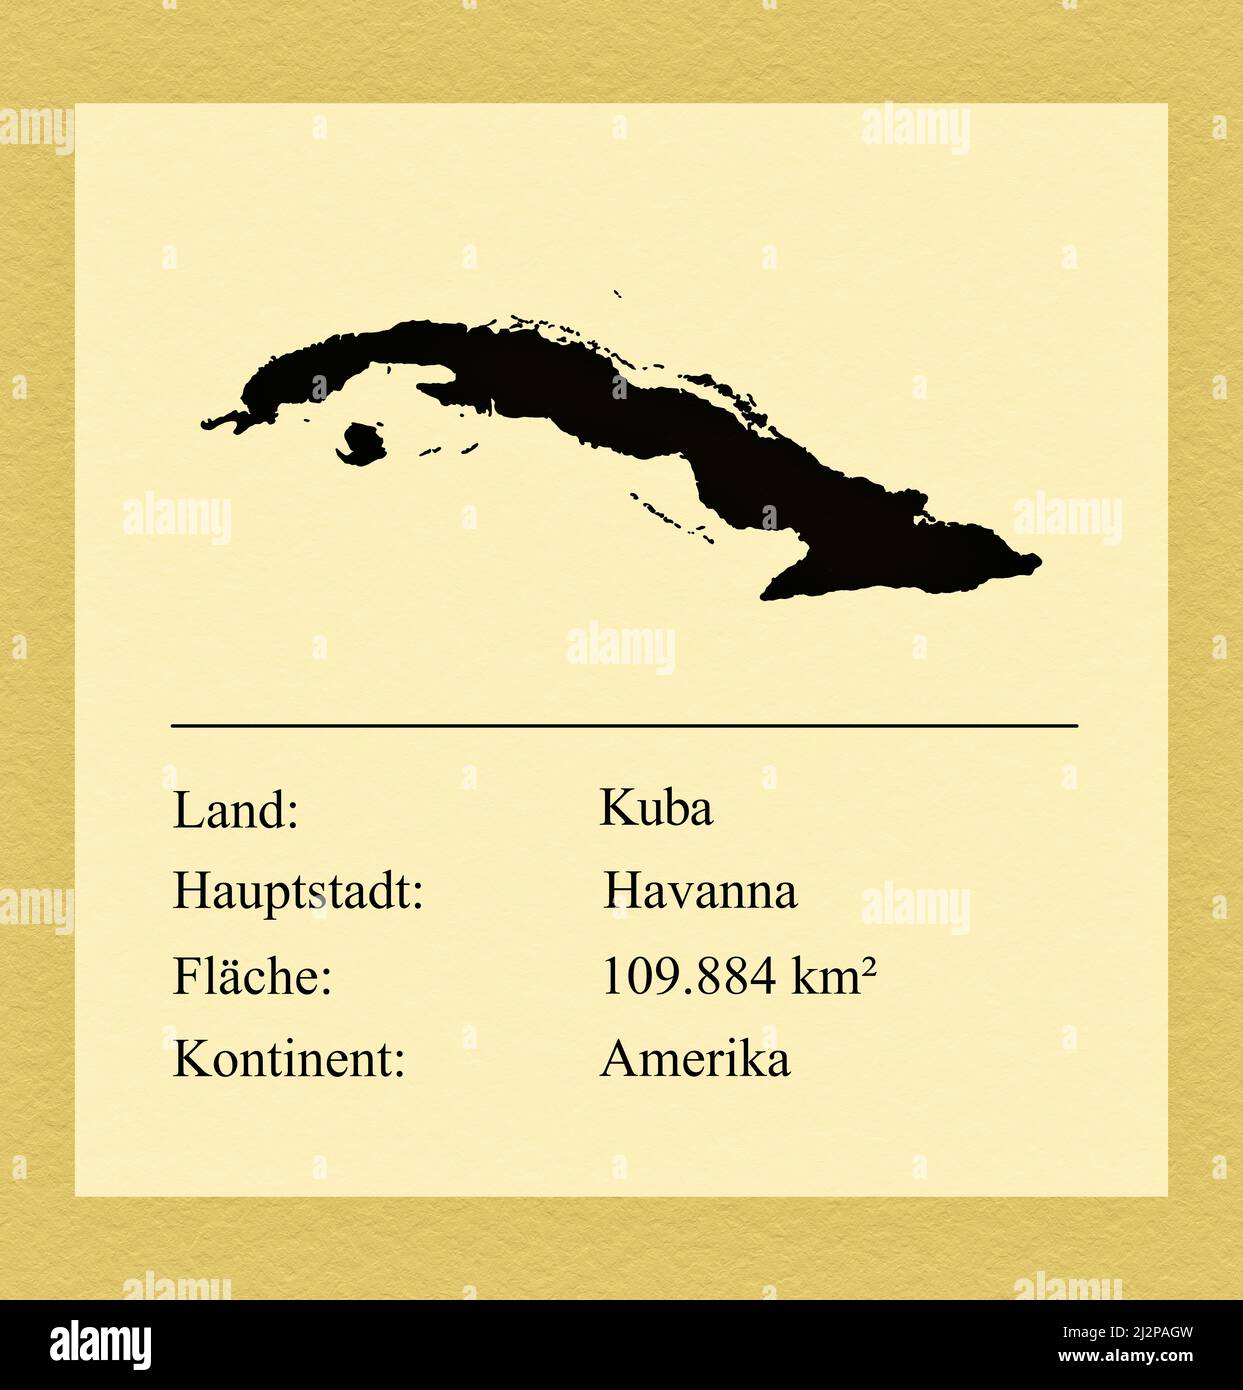 Umrisse des Landes Kuba, darunter ein kleiner Steckbrief mit Ländernamen, Hauptstadt, Fläche und Kontinent Foto Stock